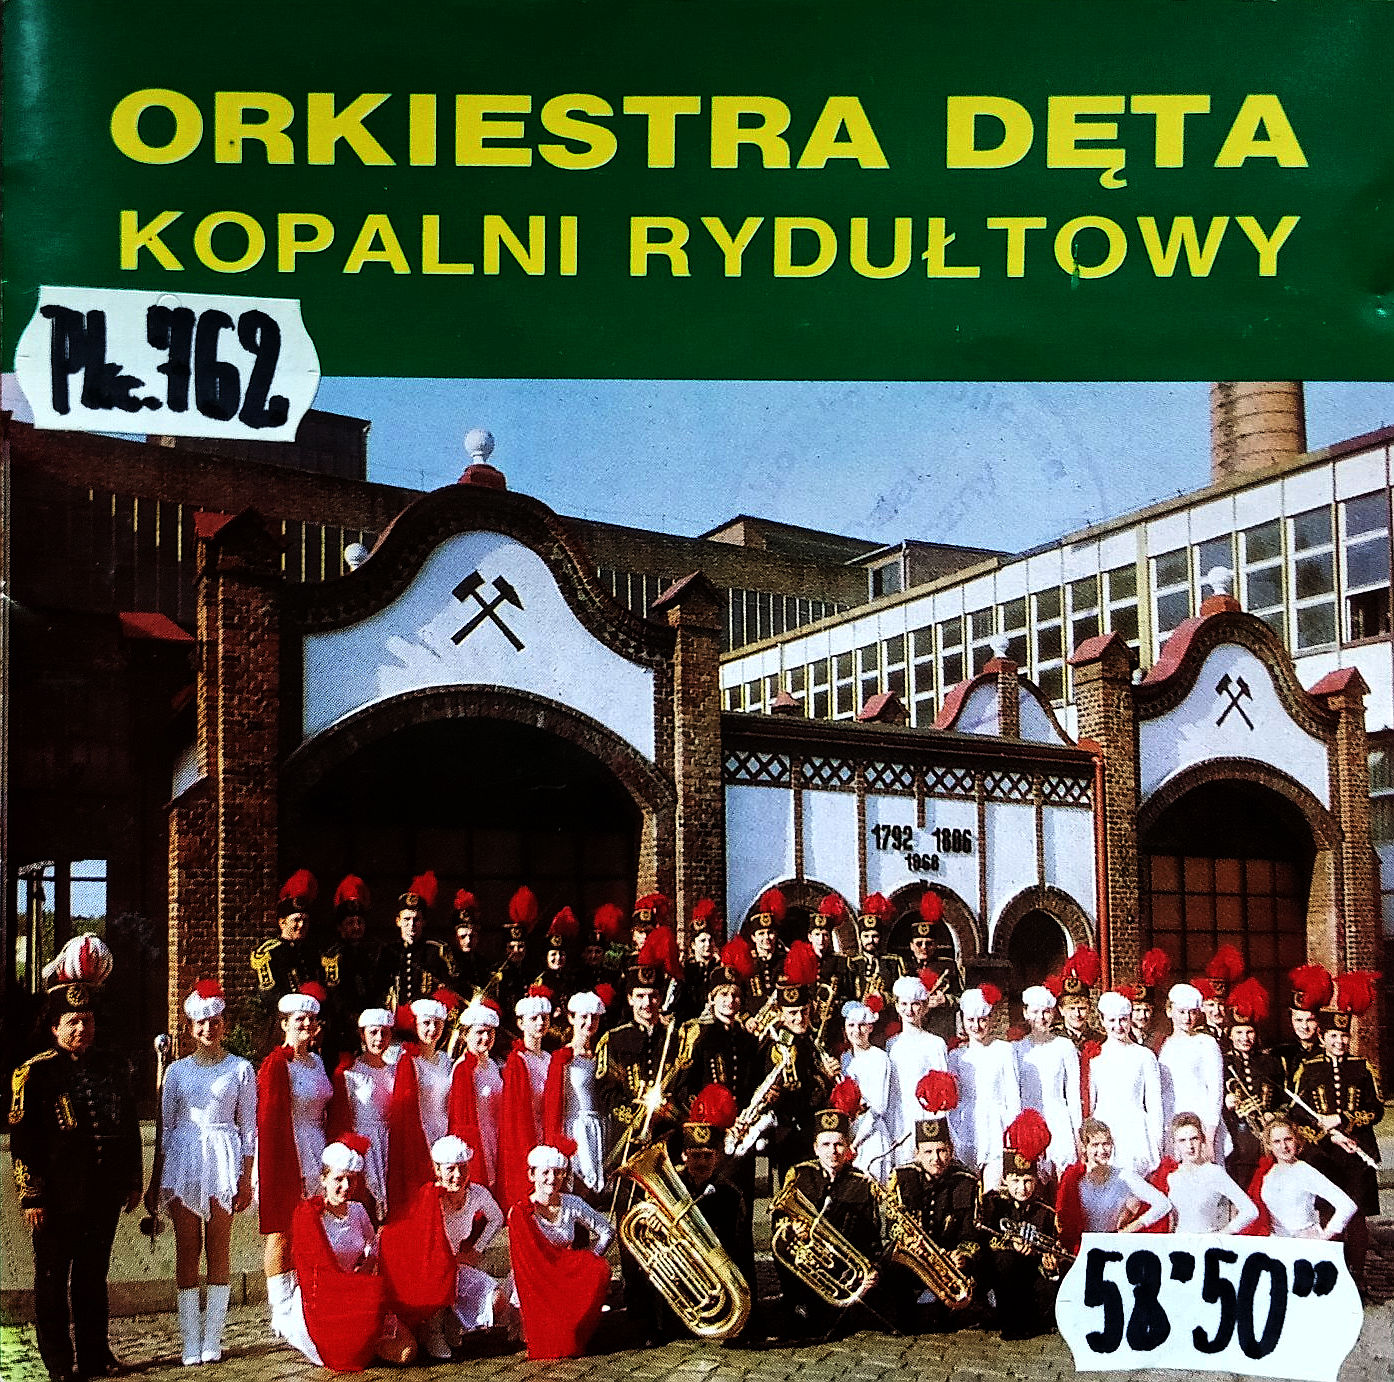 ORKIESTRA DĘTA KWK RYDUŁTOWY - Orkiestra Dęta Kopalni Rydułtowy